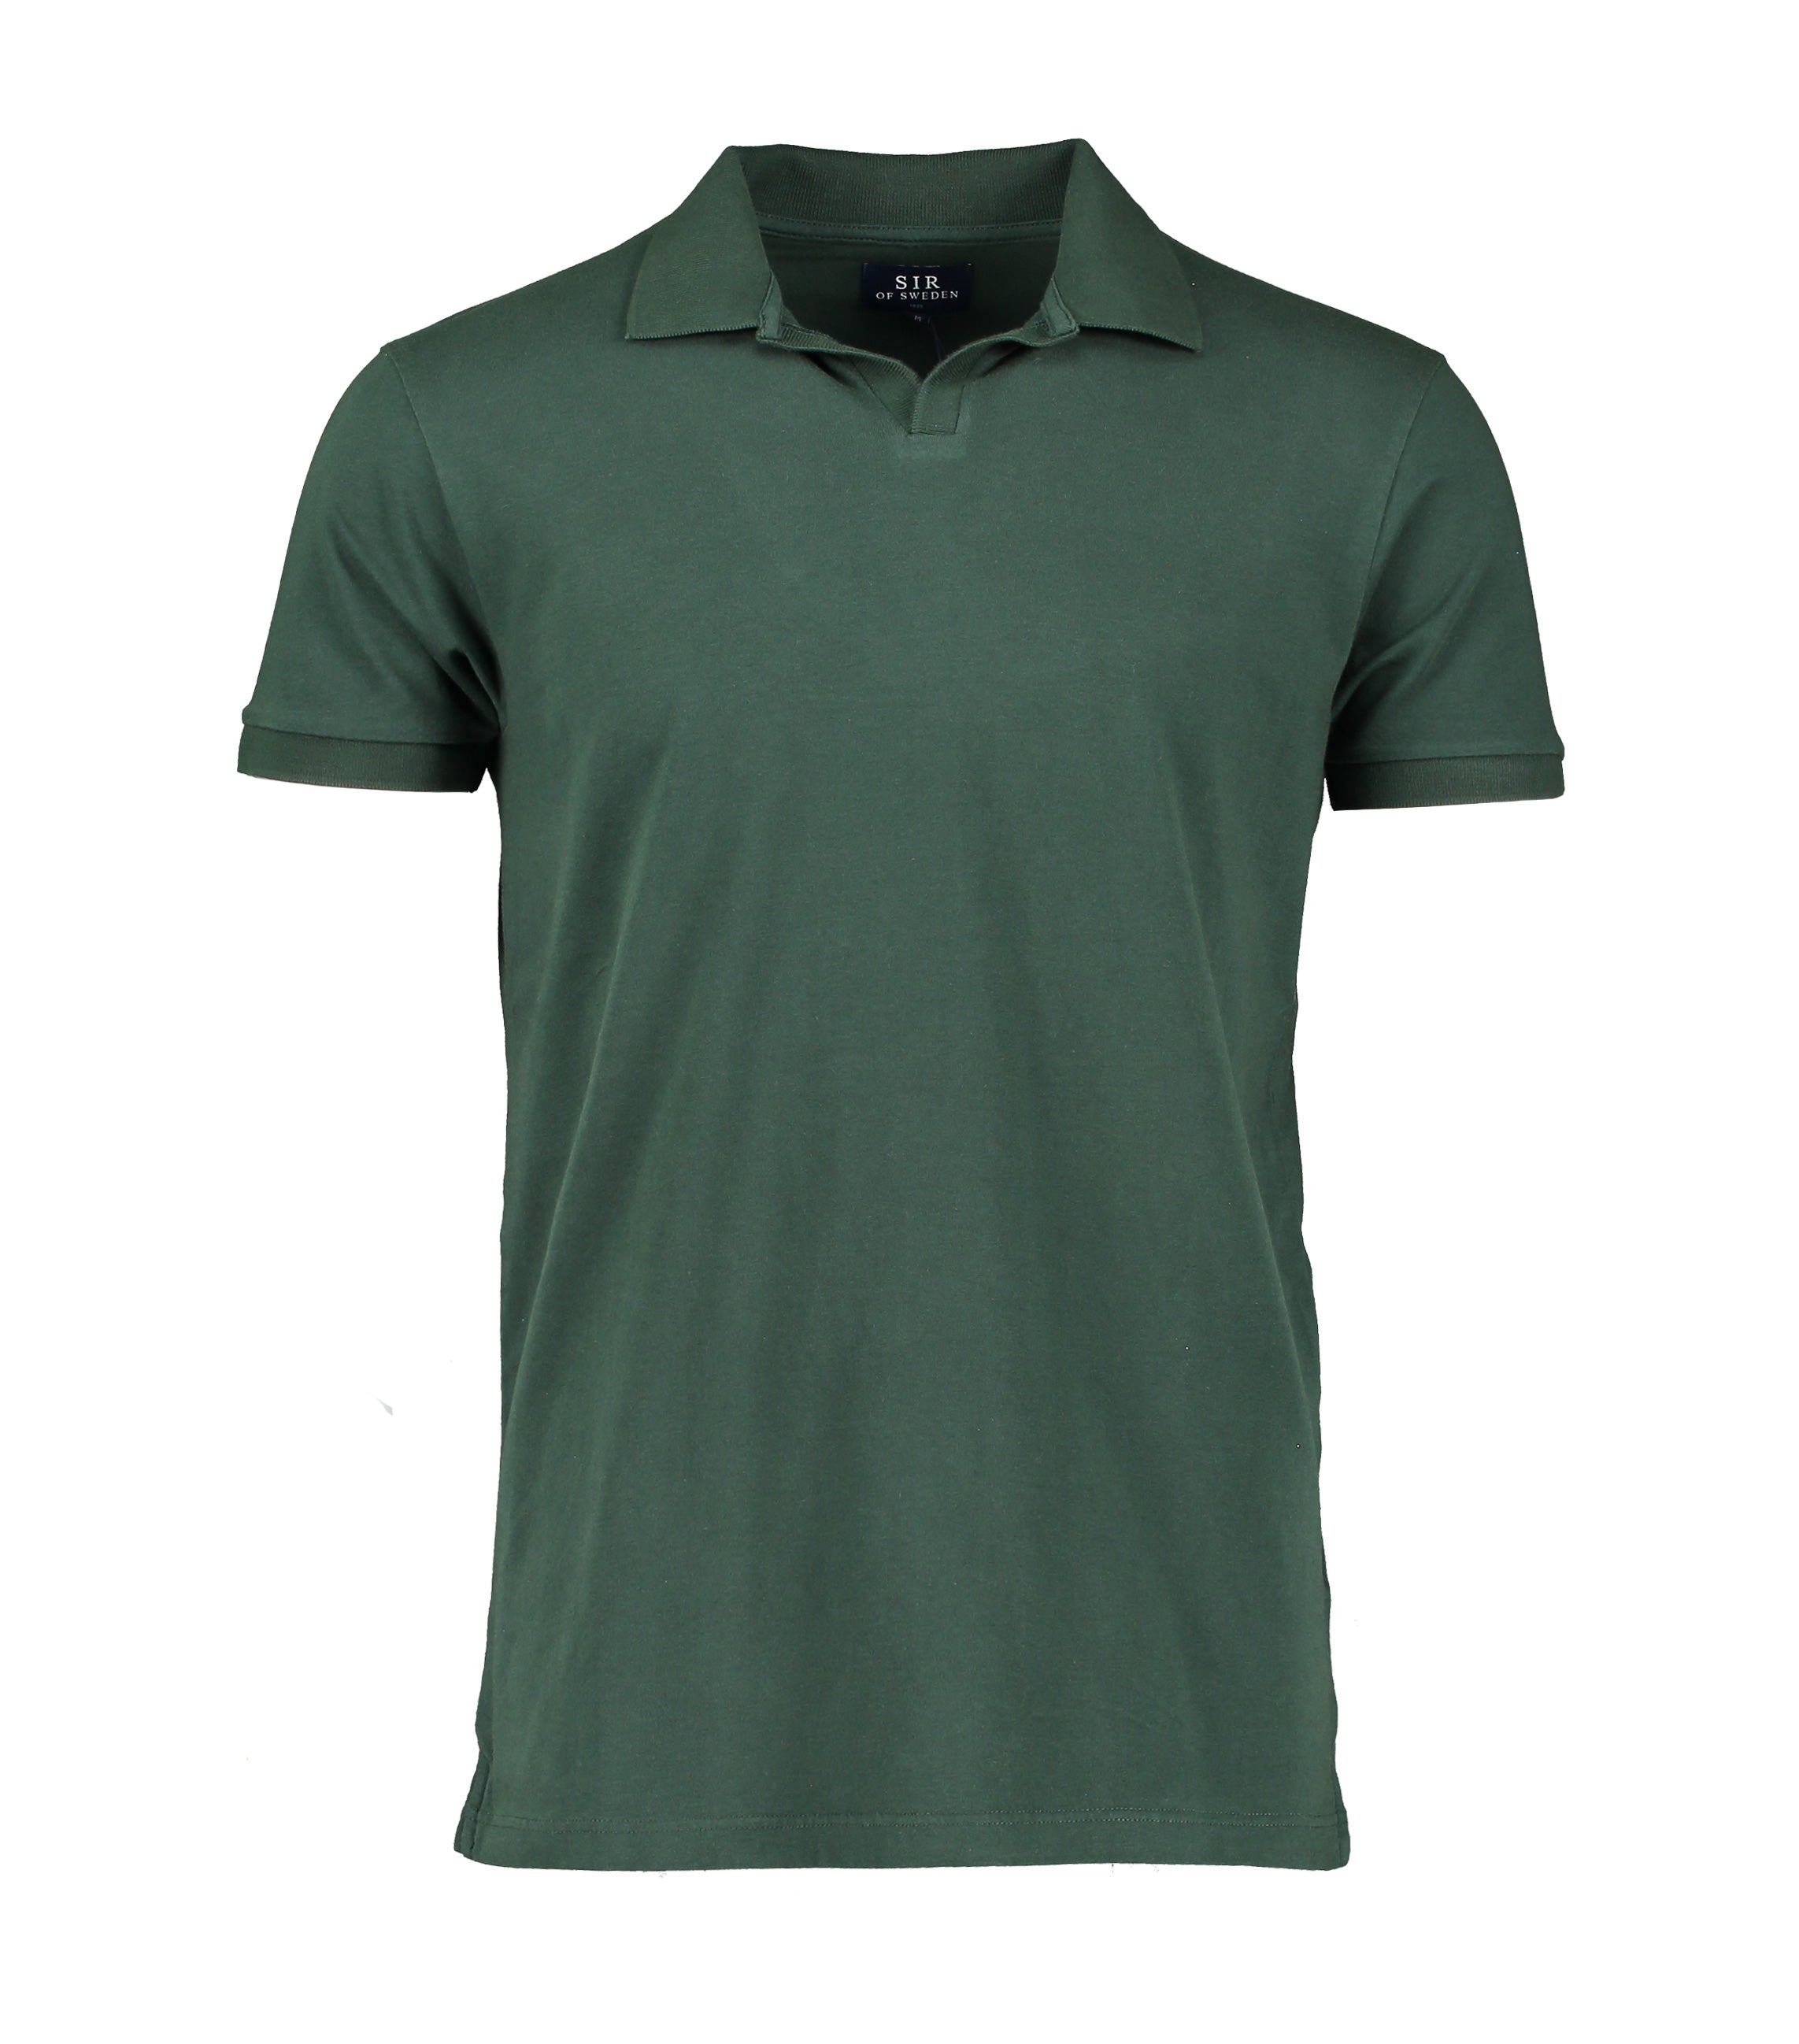 Sean Green Tennis Polo Shirt